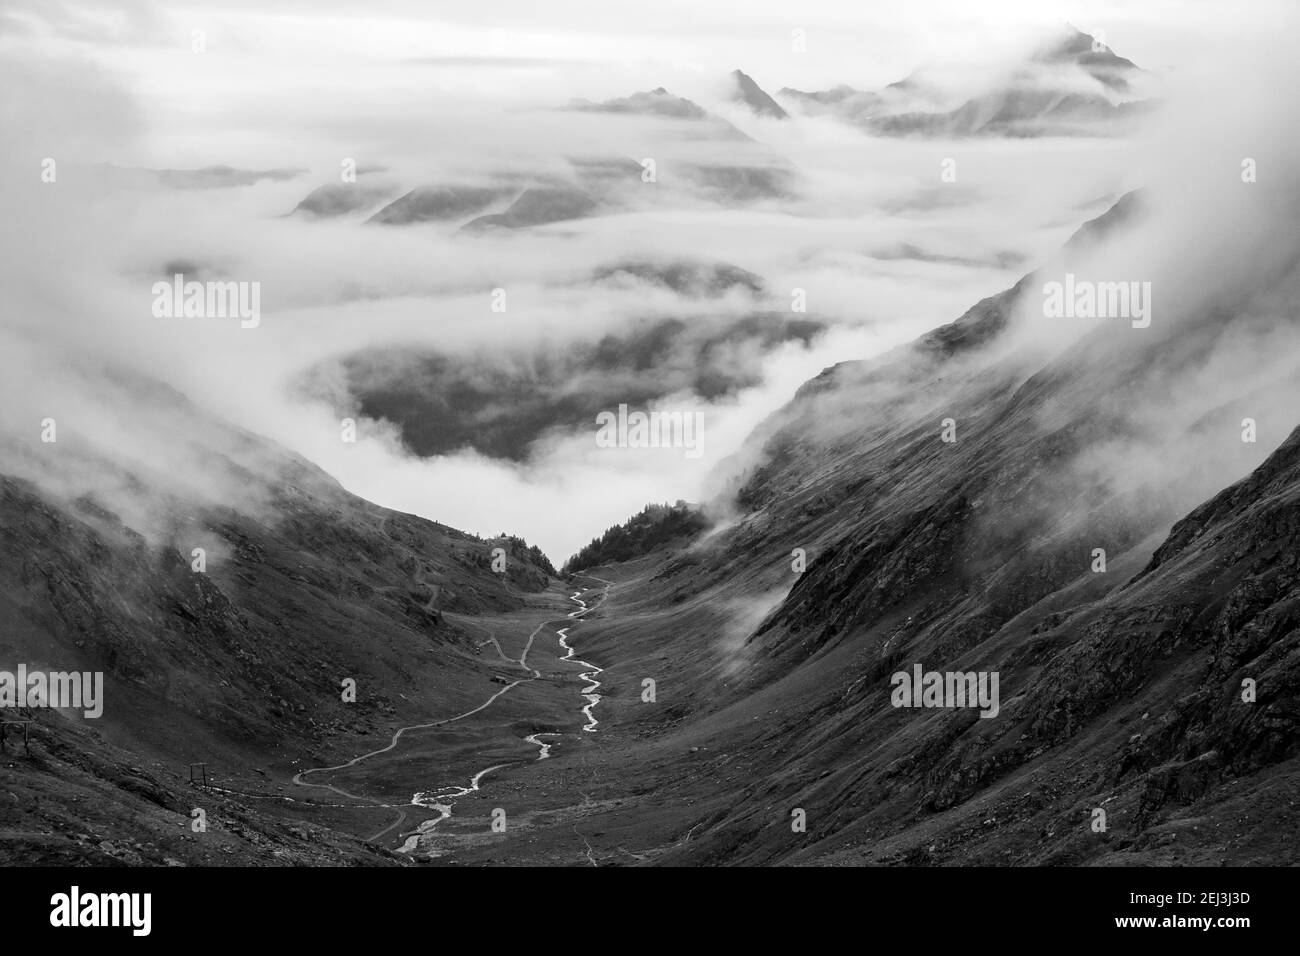 Vallée de Timmel (Timmeltal). Torrent alpin. Des nuages évocateurs. Groupe Venediger. Virginie. Alpes autrichiennes. Europe. Banque D'Images